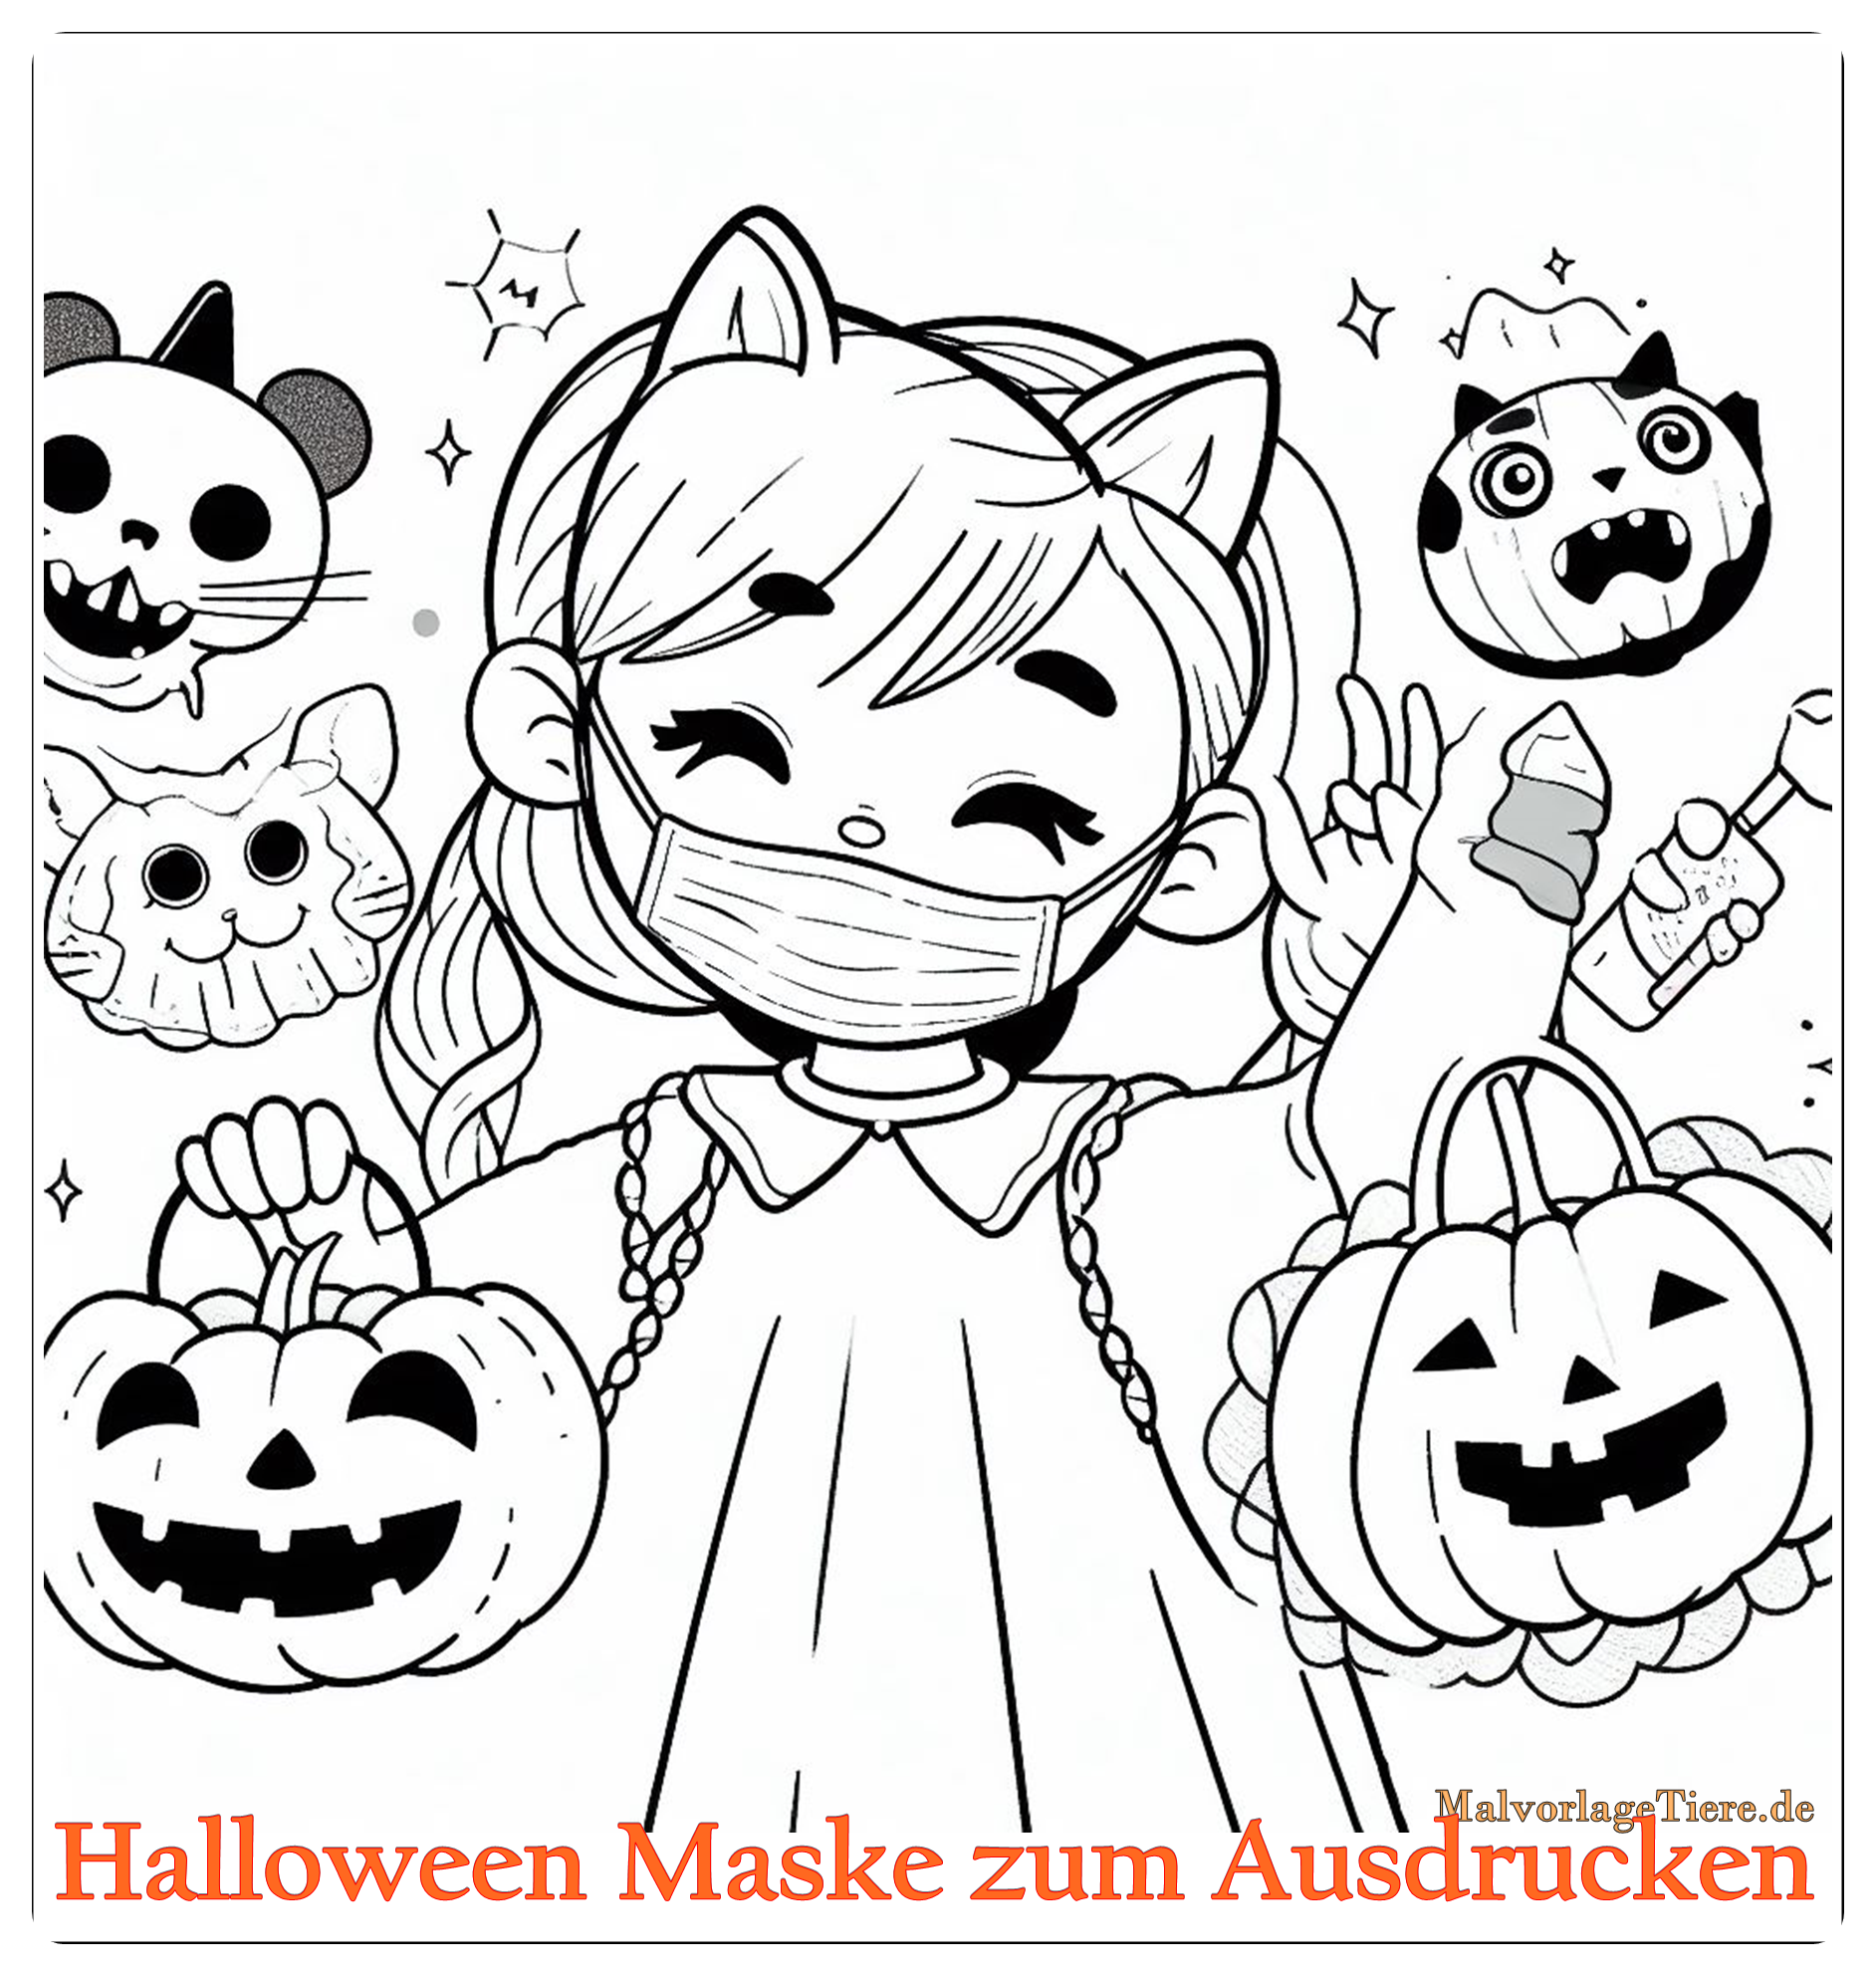 Halloween Maske zum Ausdrucken 04 by malvorlagetiere.de